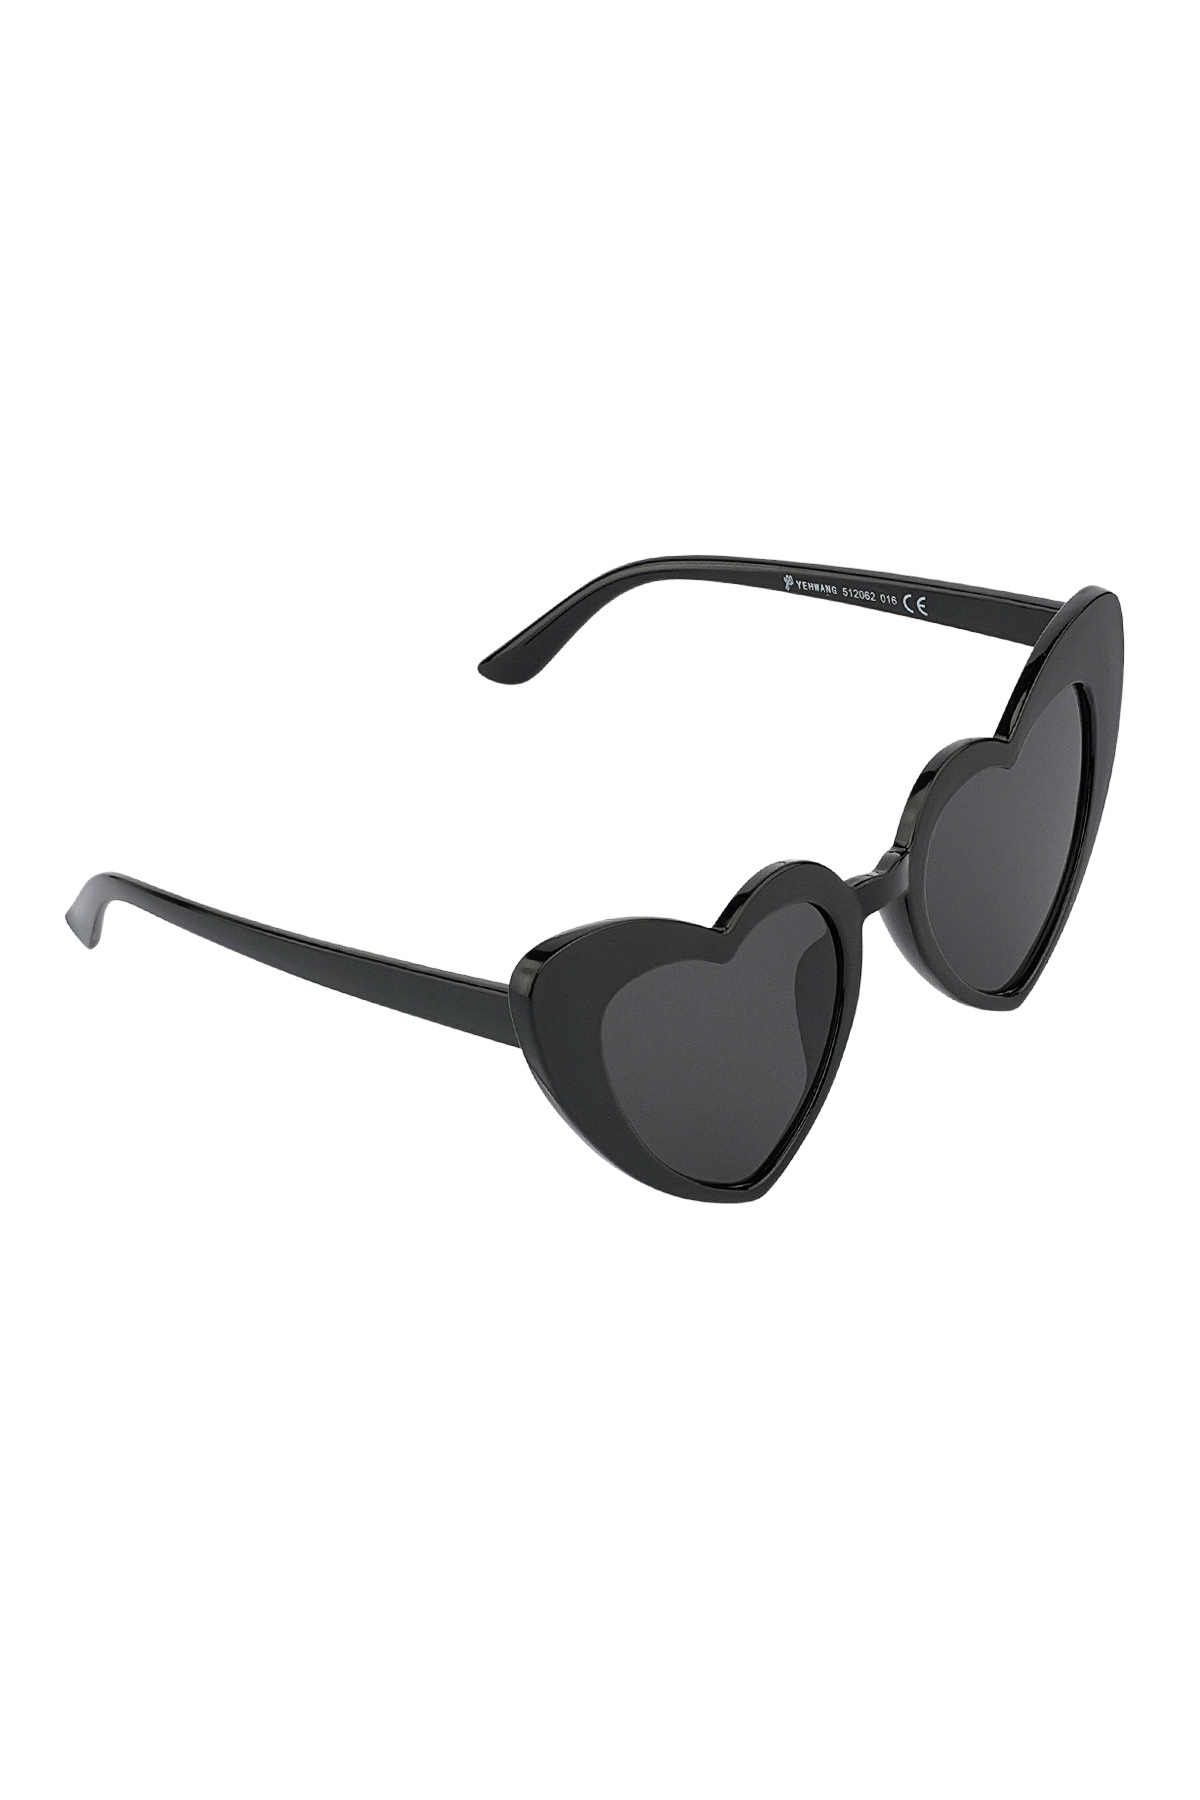 L'amore per gli occhiali da sole è nell'aria: in bianco e nero Immagine2